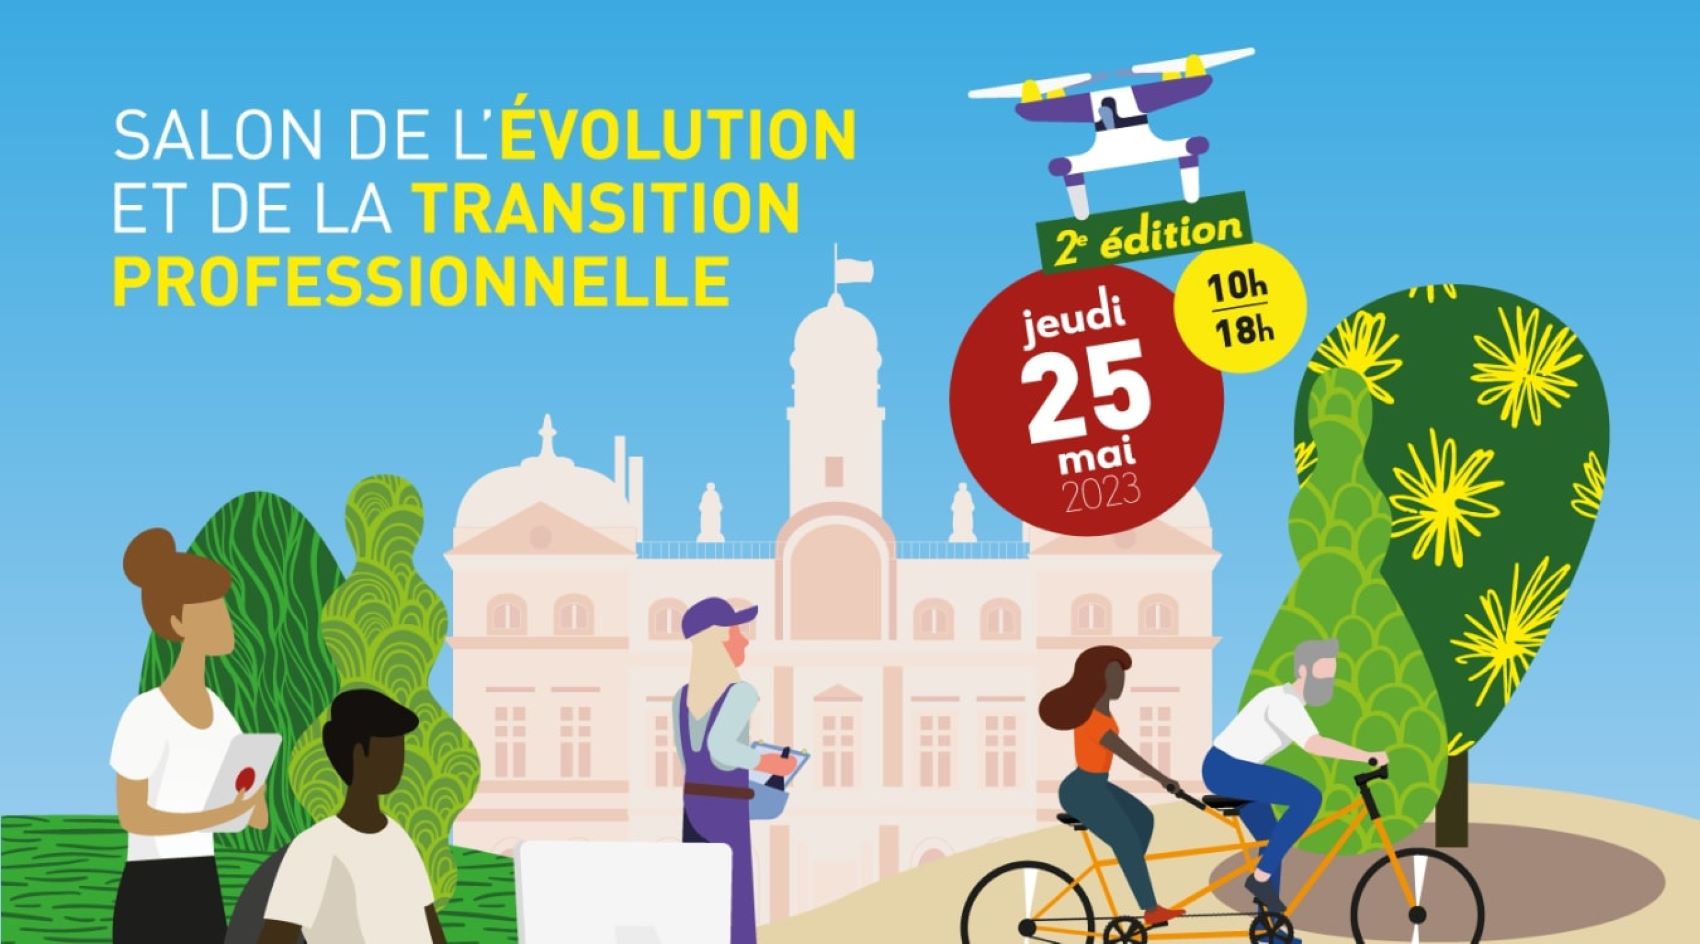 Visuel du salon de l’Évolution et de la Transition Professionnelle à Lyon, 25 mai 2023